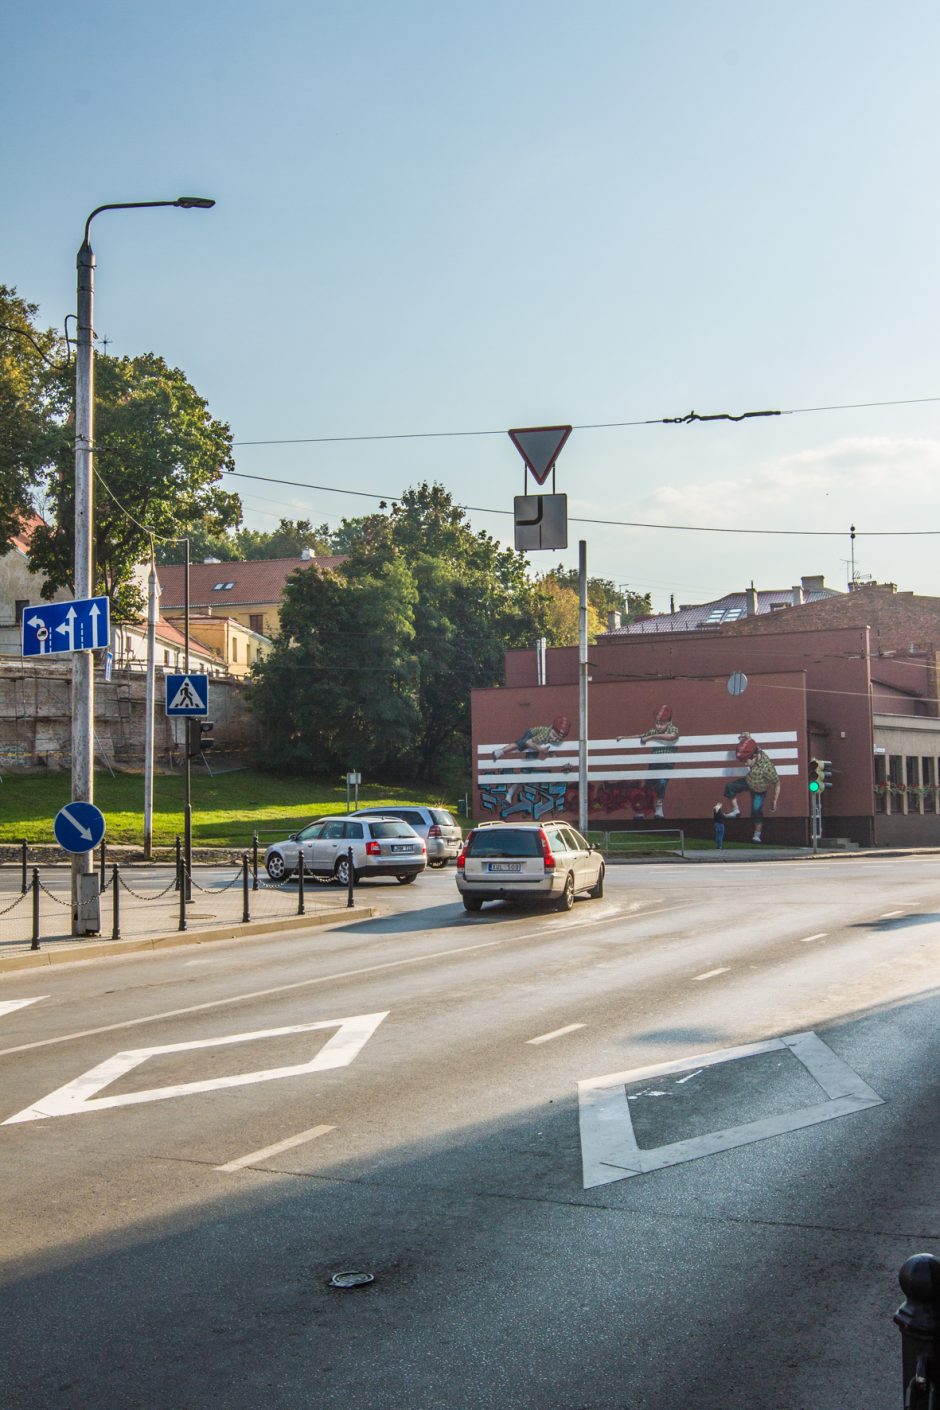 Prie perėjų nubraižyti rombai kelia sumaištį: Kaunas kuria savas eismo taisykles?